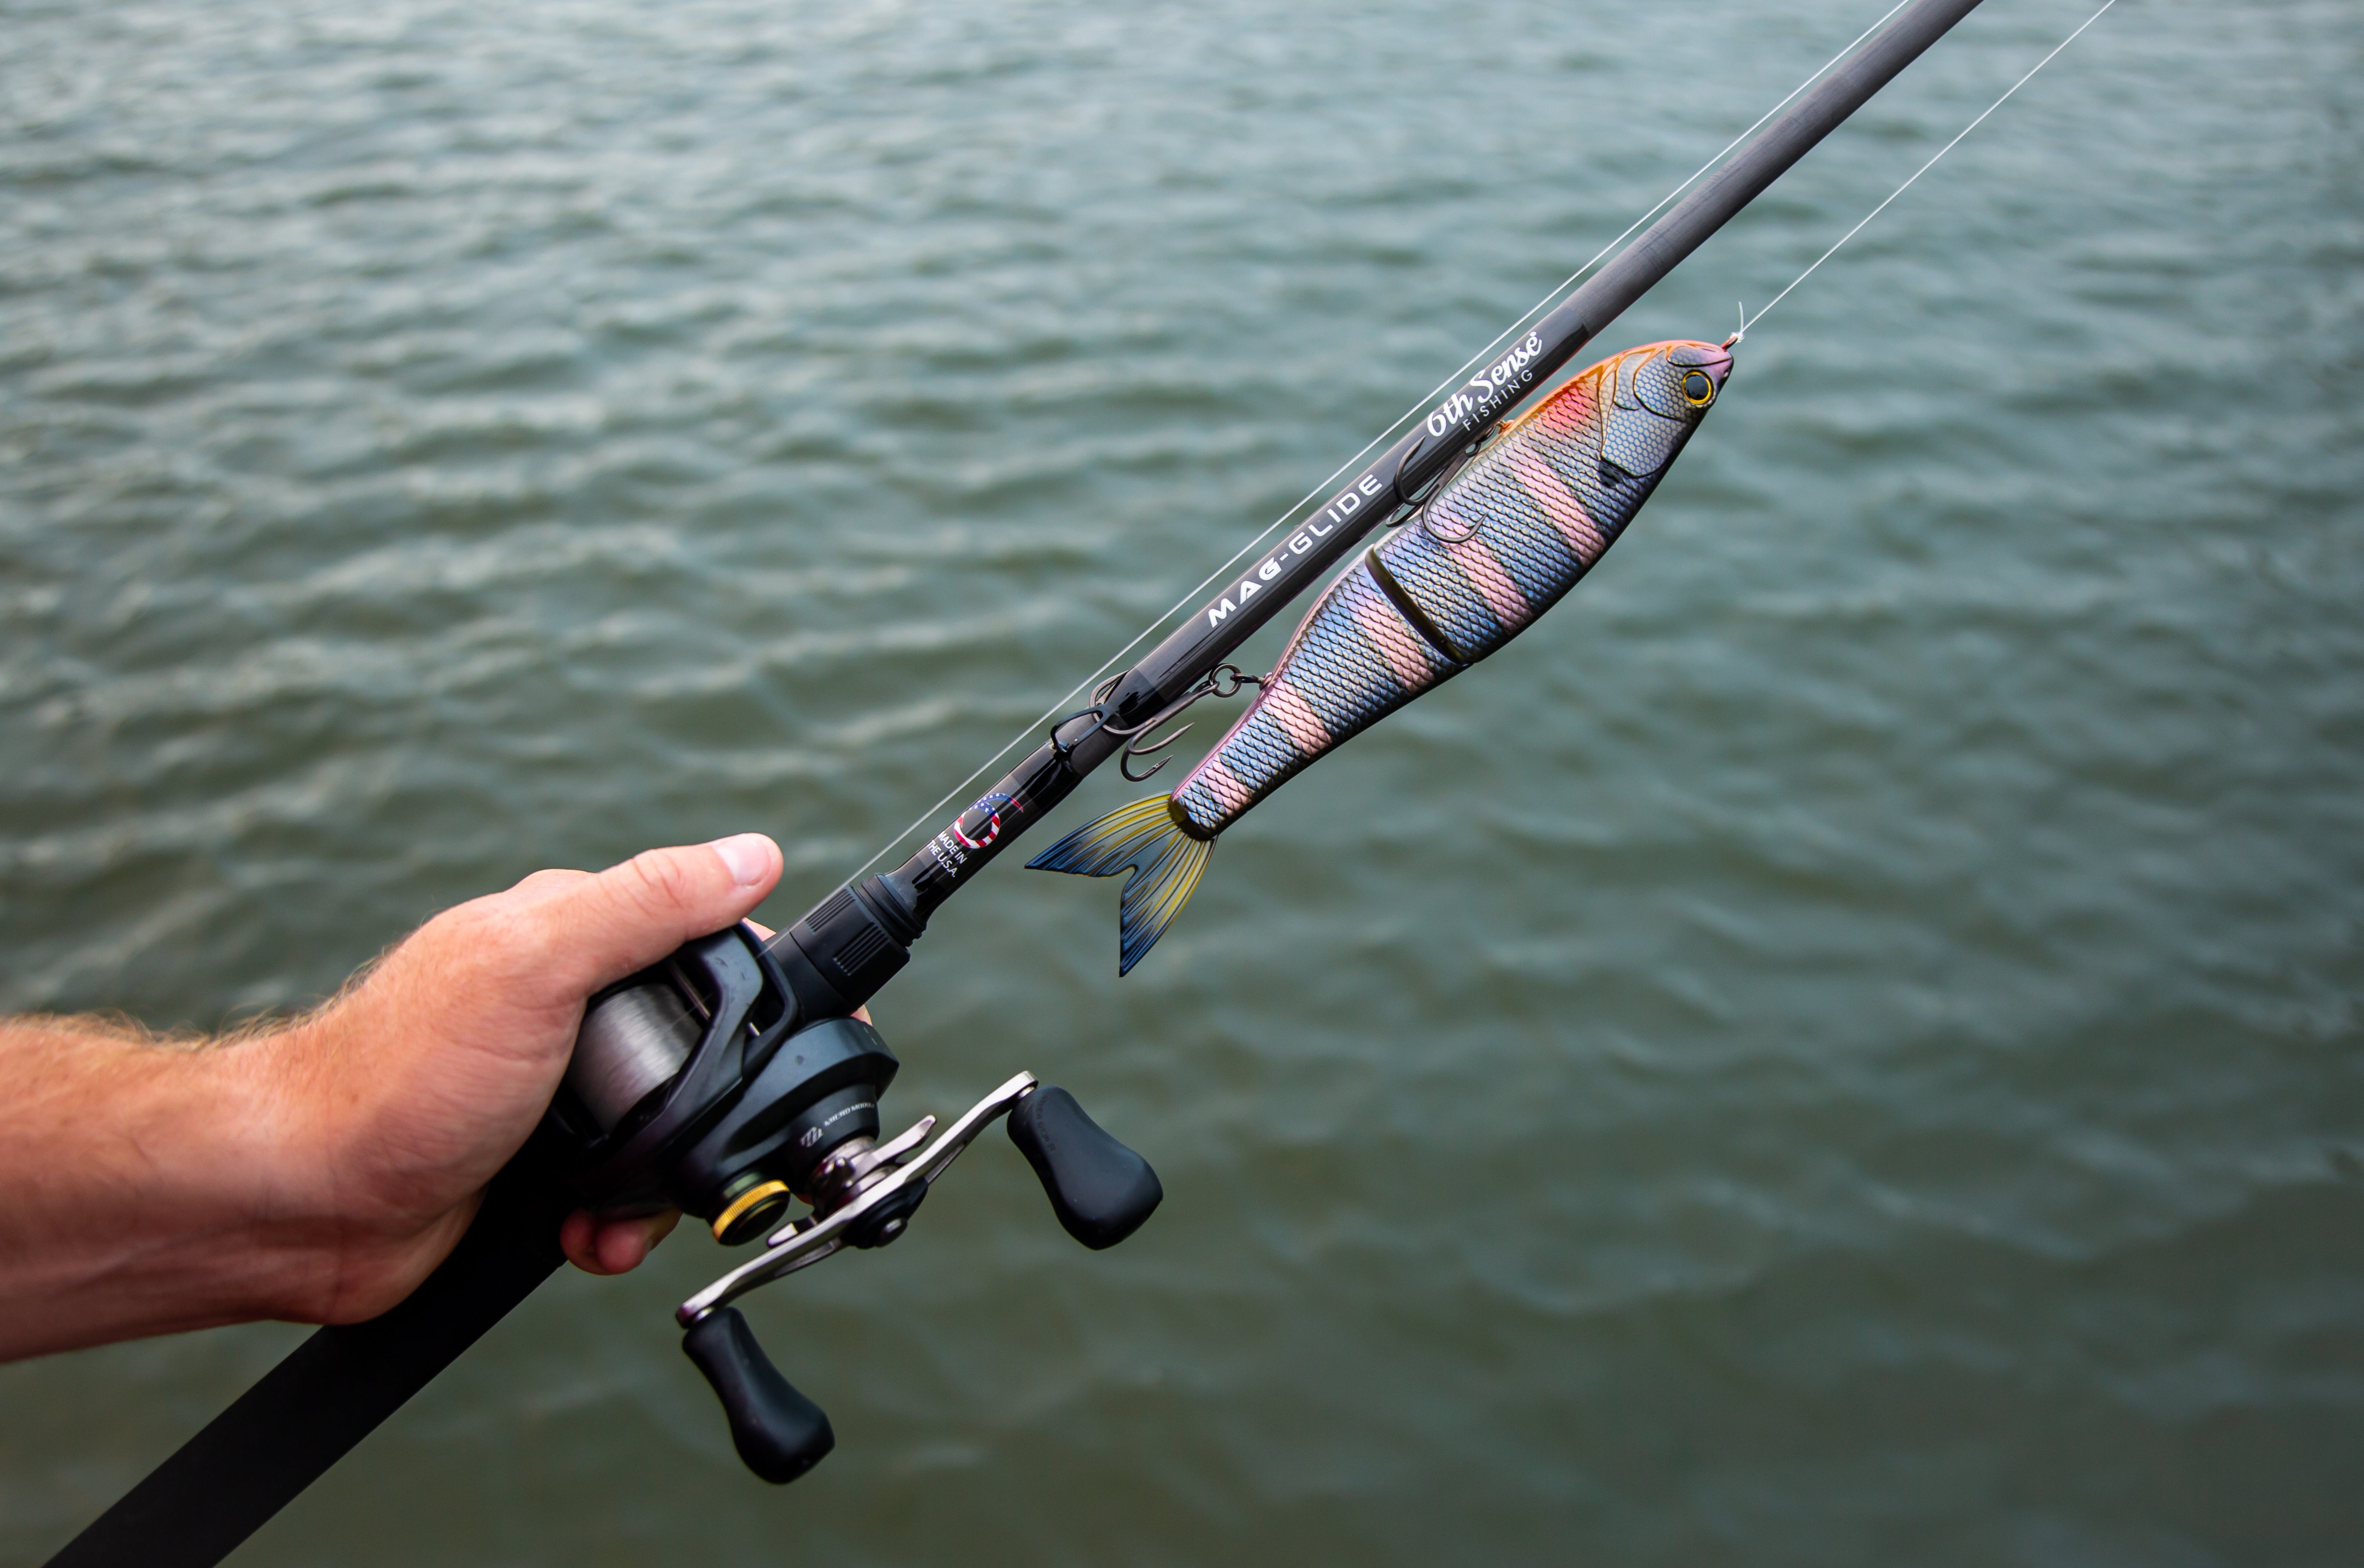 6th Sense Fishing - USA Series Casting Rod - 7'11 Mag Heavy, Fast